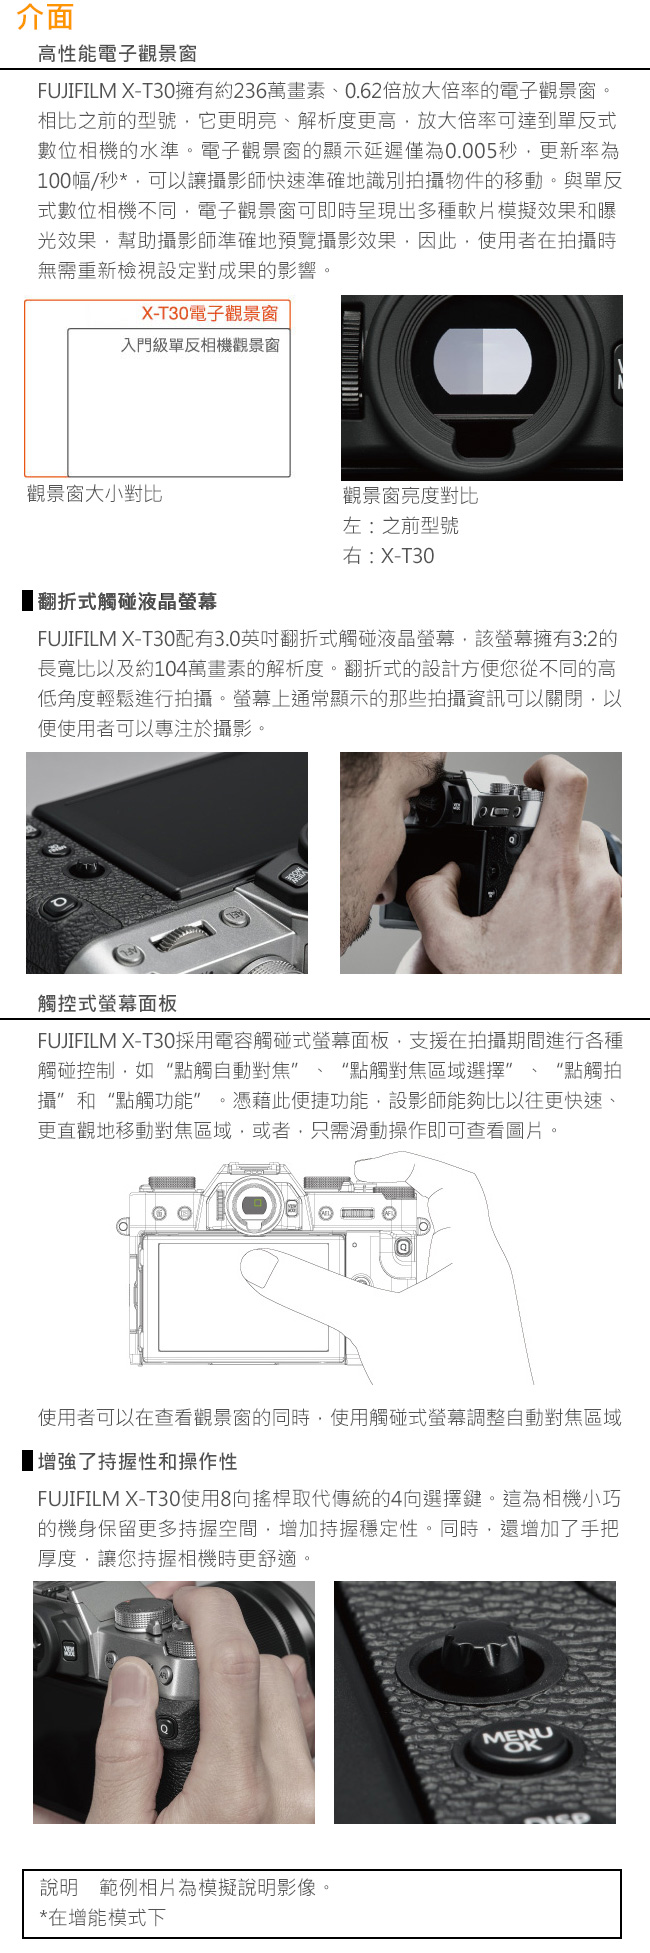 (無卡12期)FUJIFILM X-T30 XF18-55mm 變焦鏡組(公司貨)